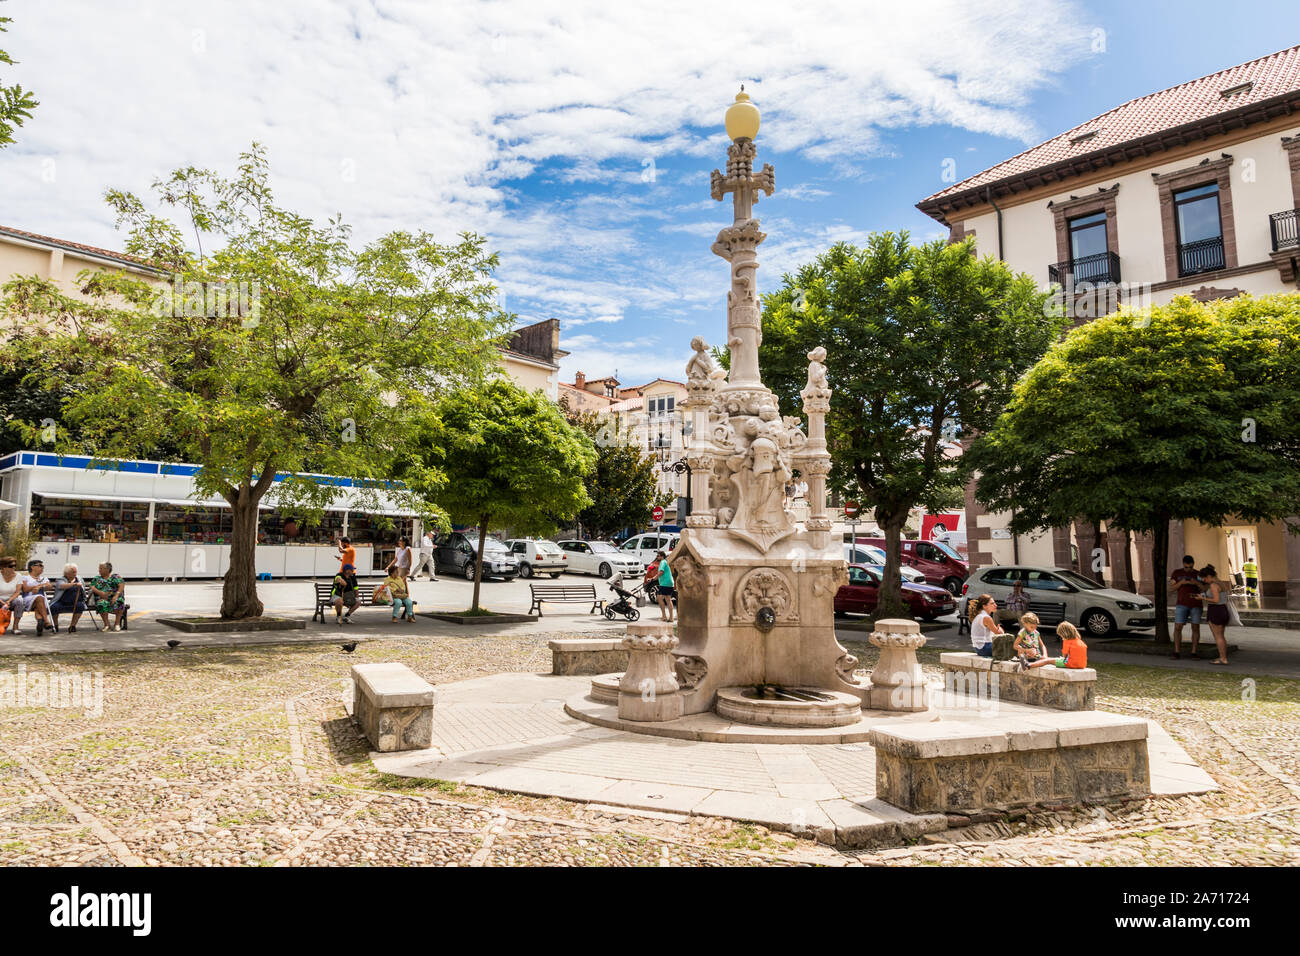 Comillas, Espagne. La Fuente de los Tres Canos (Fontaine des trois canalisations), un monument moderniste par Lluis Domenech i Montaner Banque D'Images